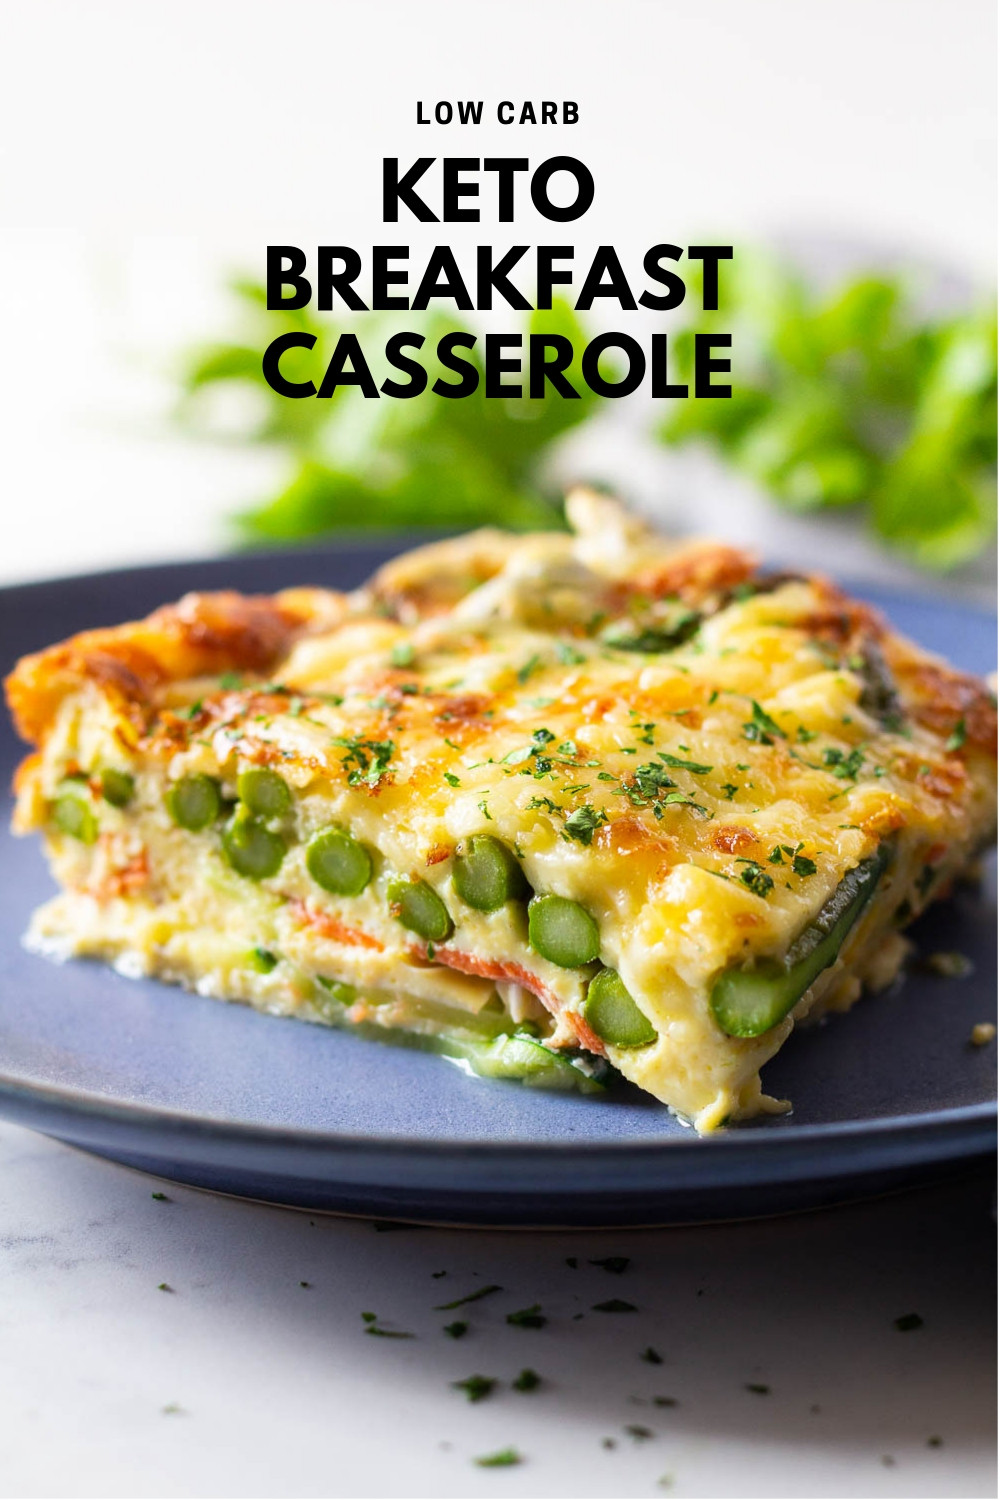 Easy Keto Casserole Recipes
 Easy Keto Breakfast Casserole Green Healthy Cooking